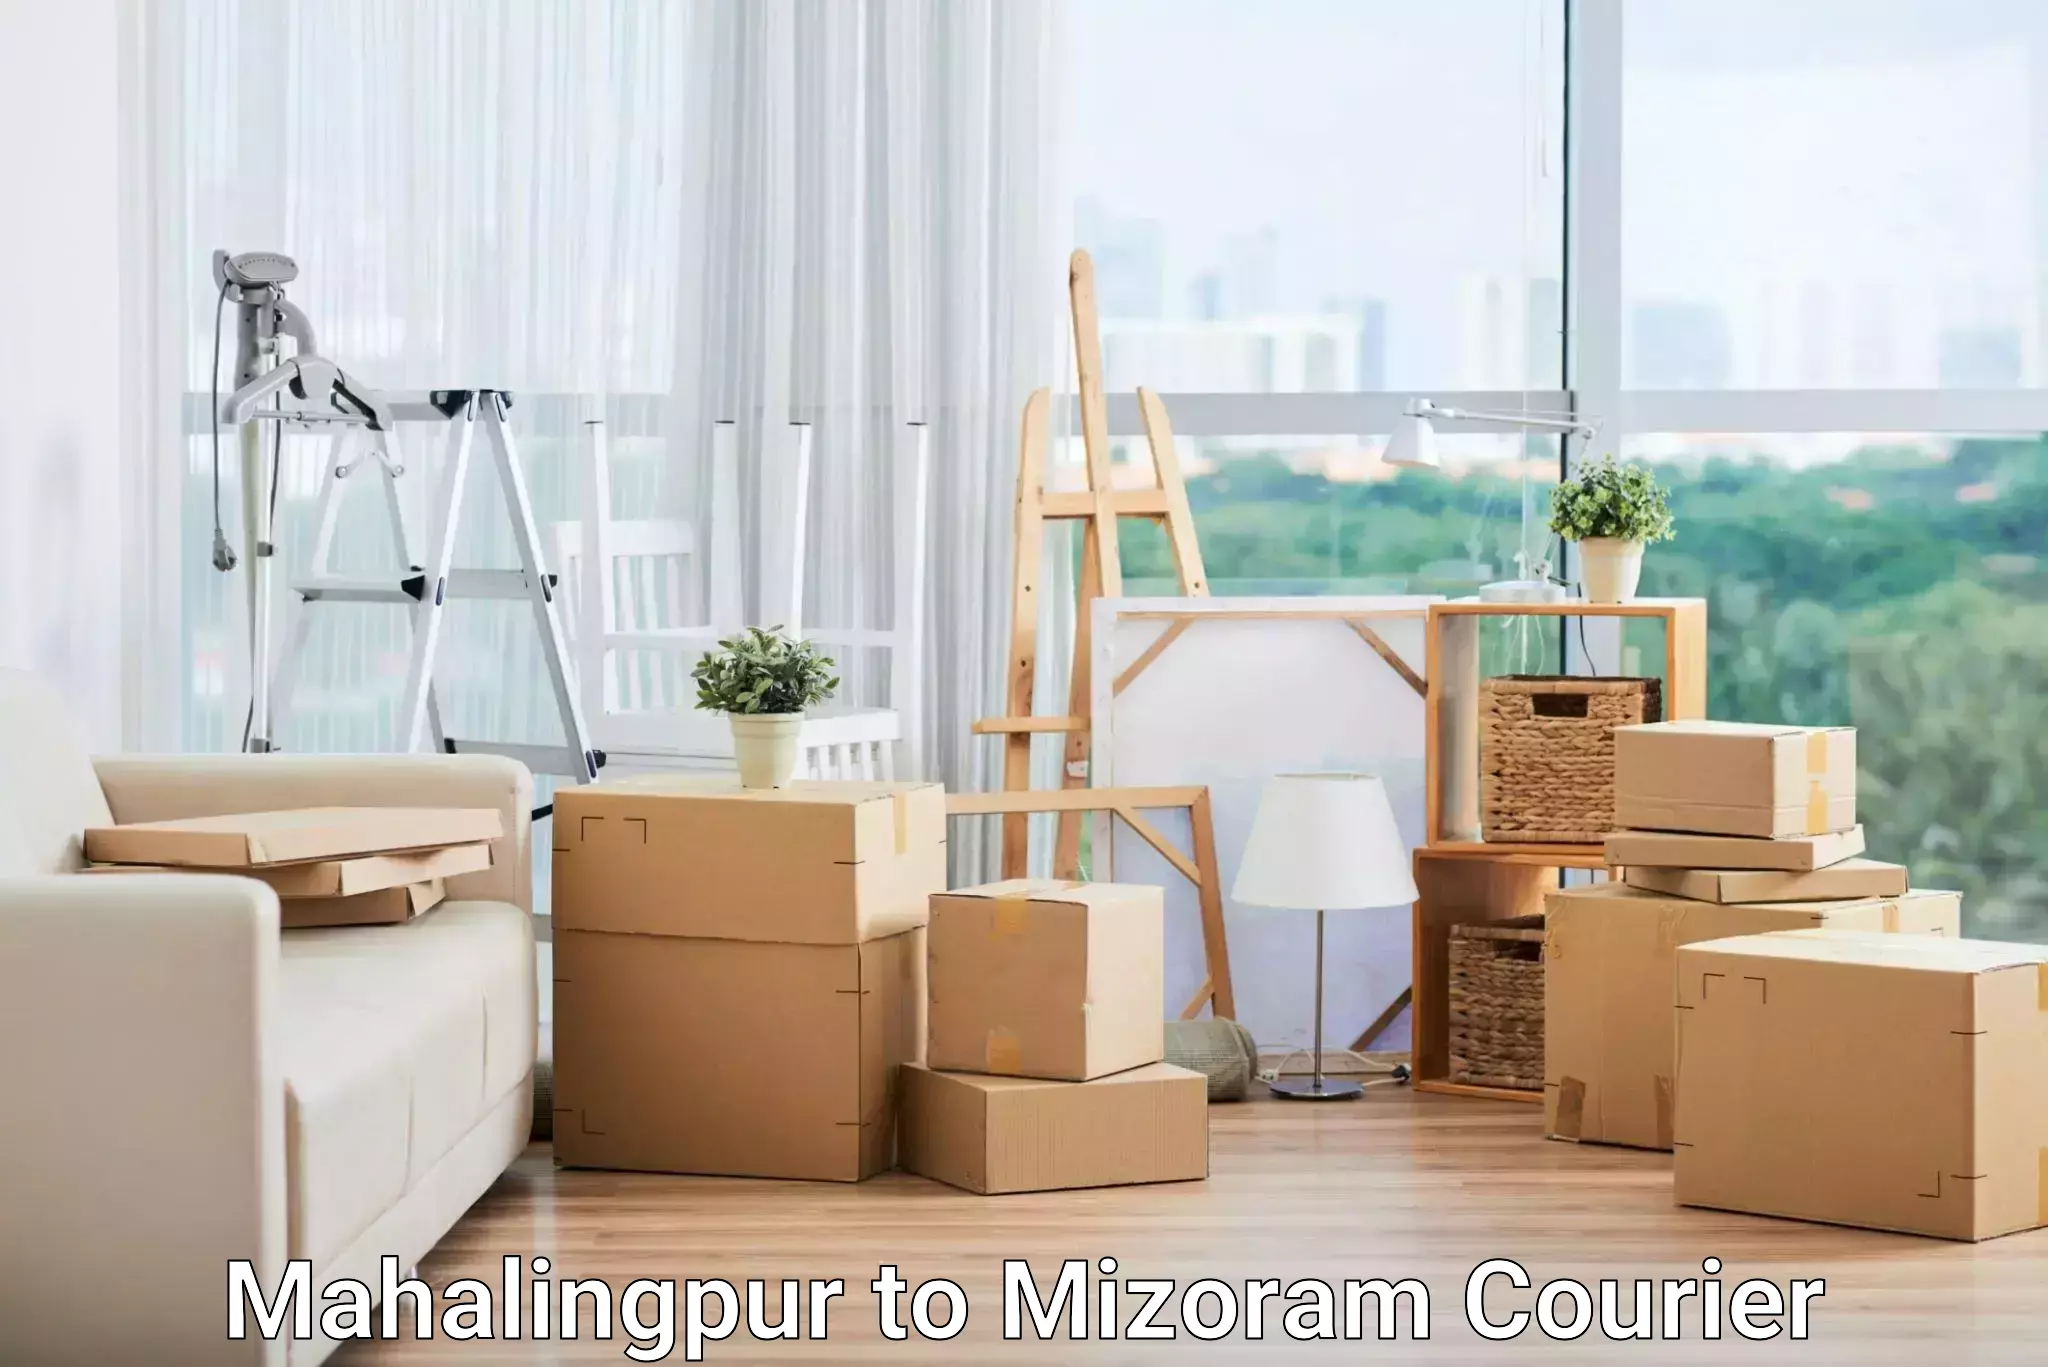 Urgent courier needs Mahalingpur to Khawzawl